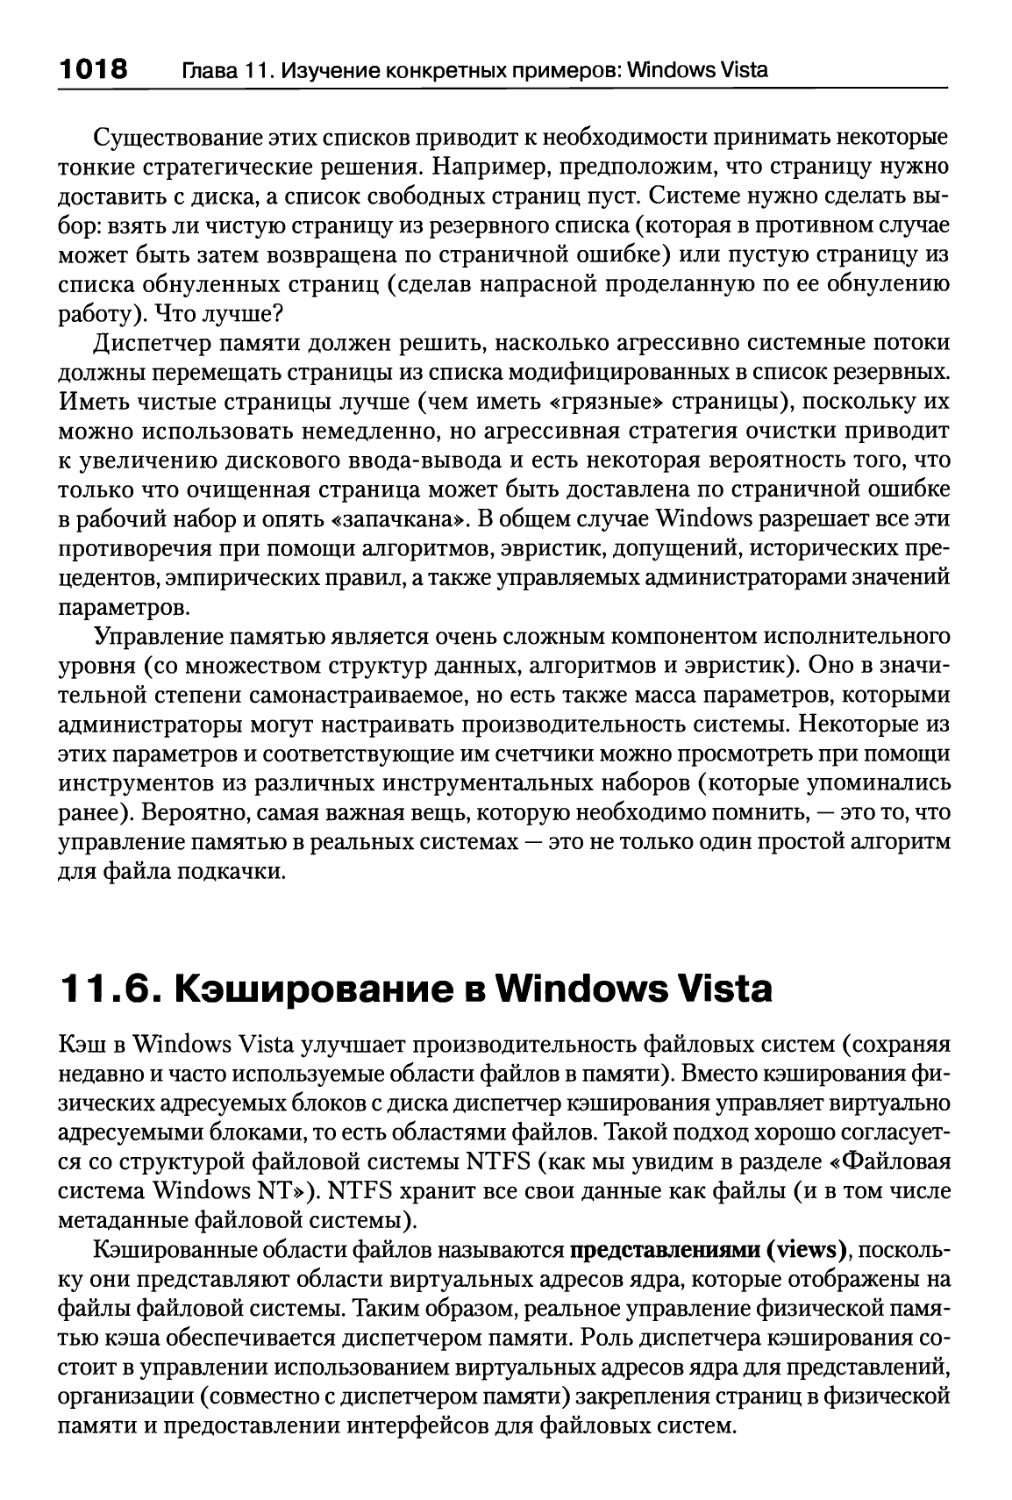 11.6. Кэширование в Windows Vista